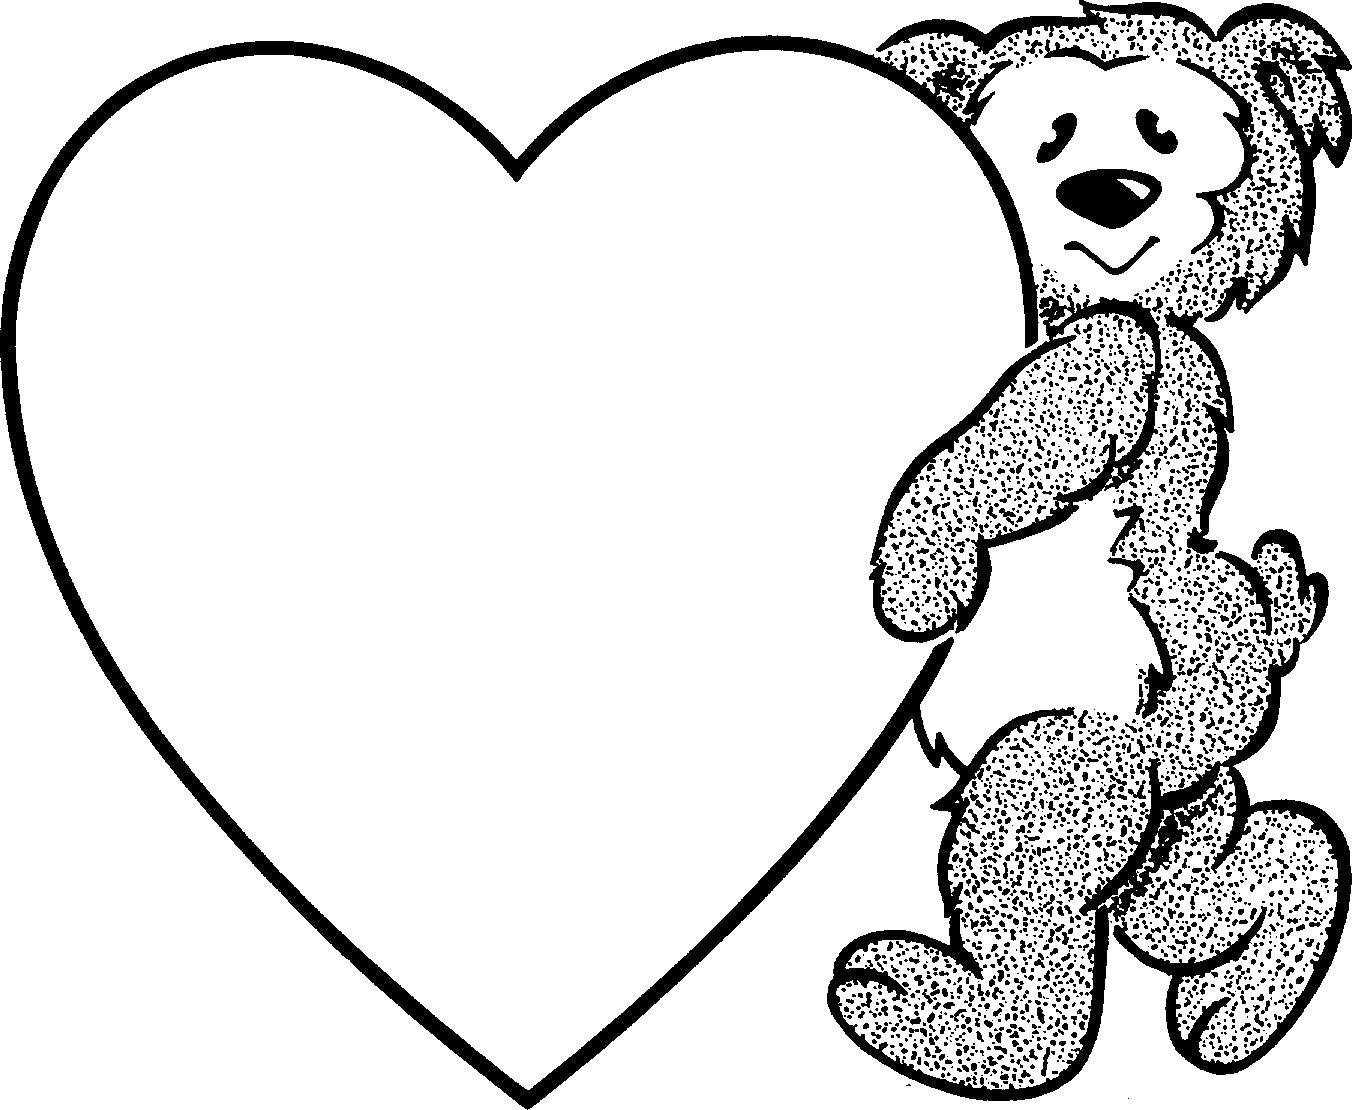 Coloring Teddy bear and heart. Category Hearts. Tags:  bear , hearts, .